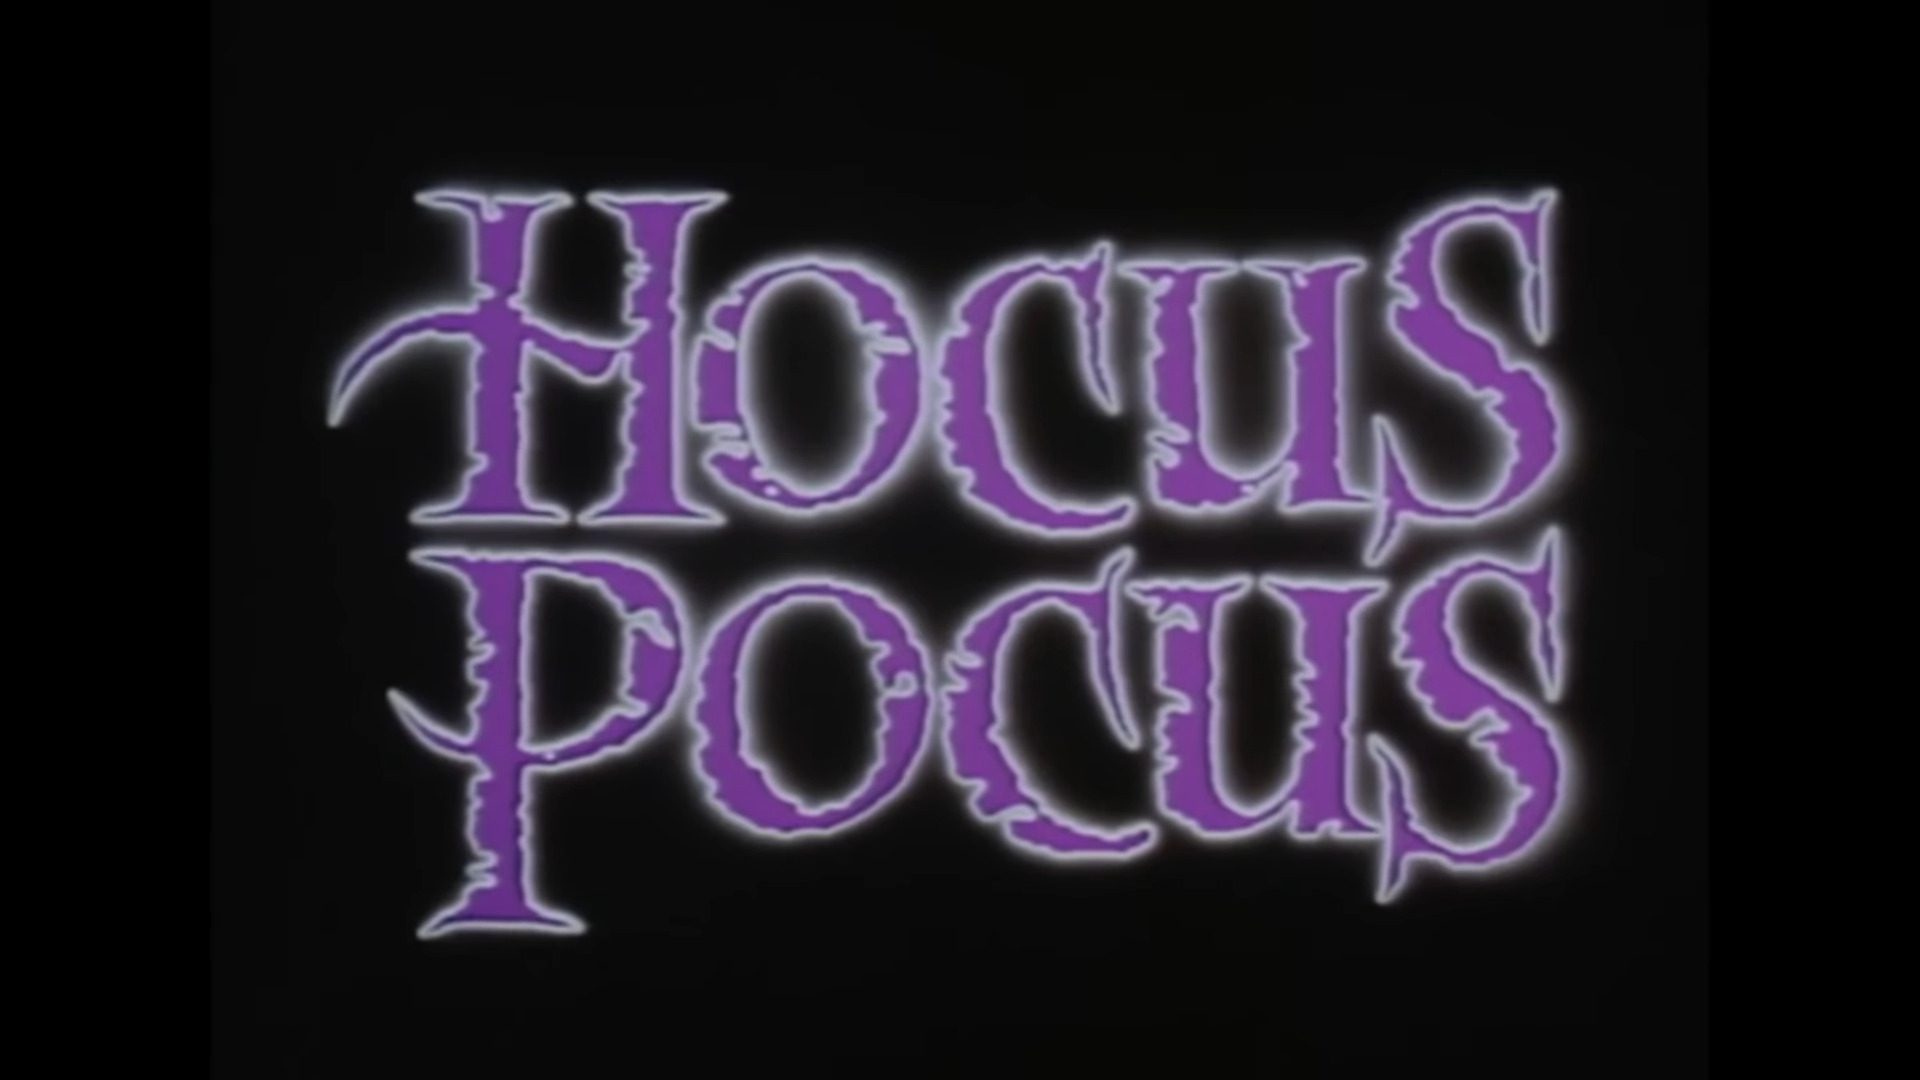 Hocus Pocus Ending